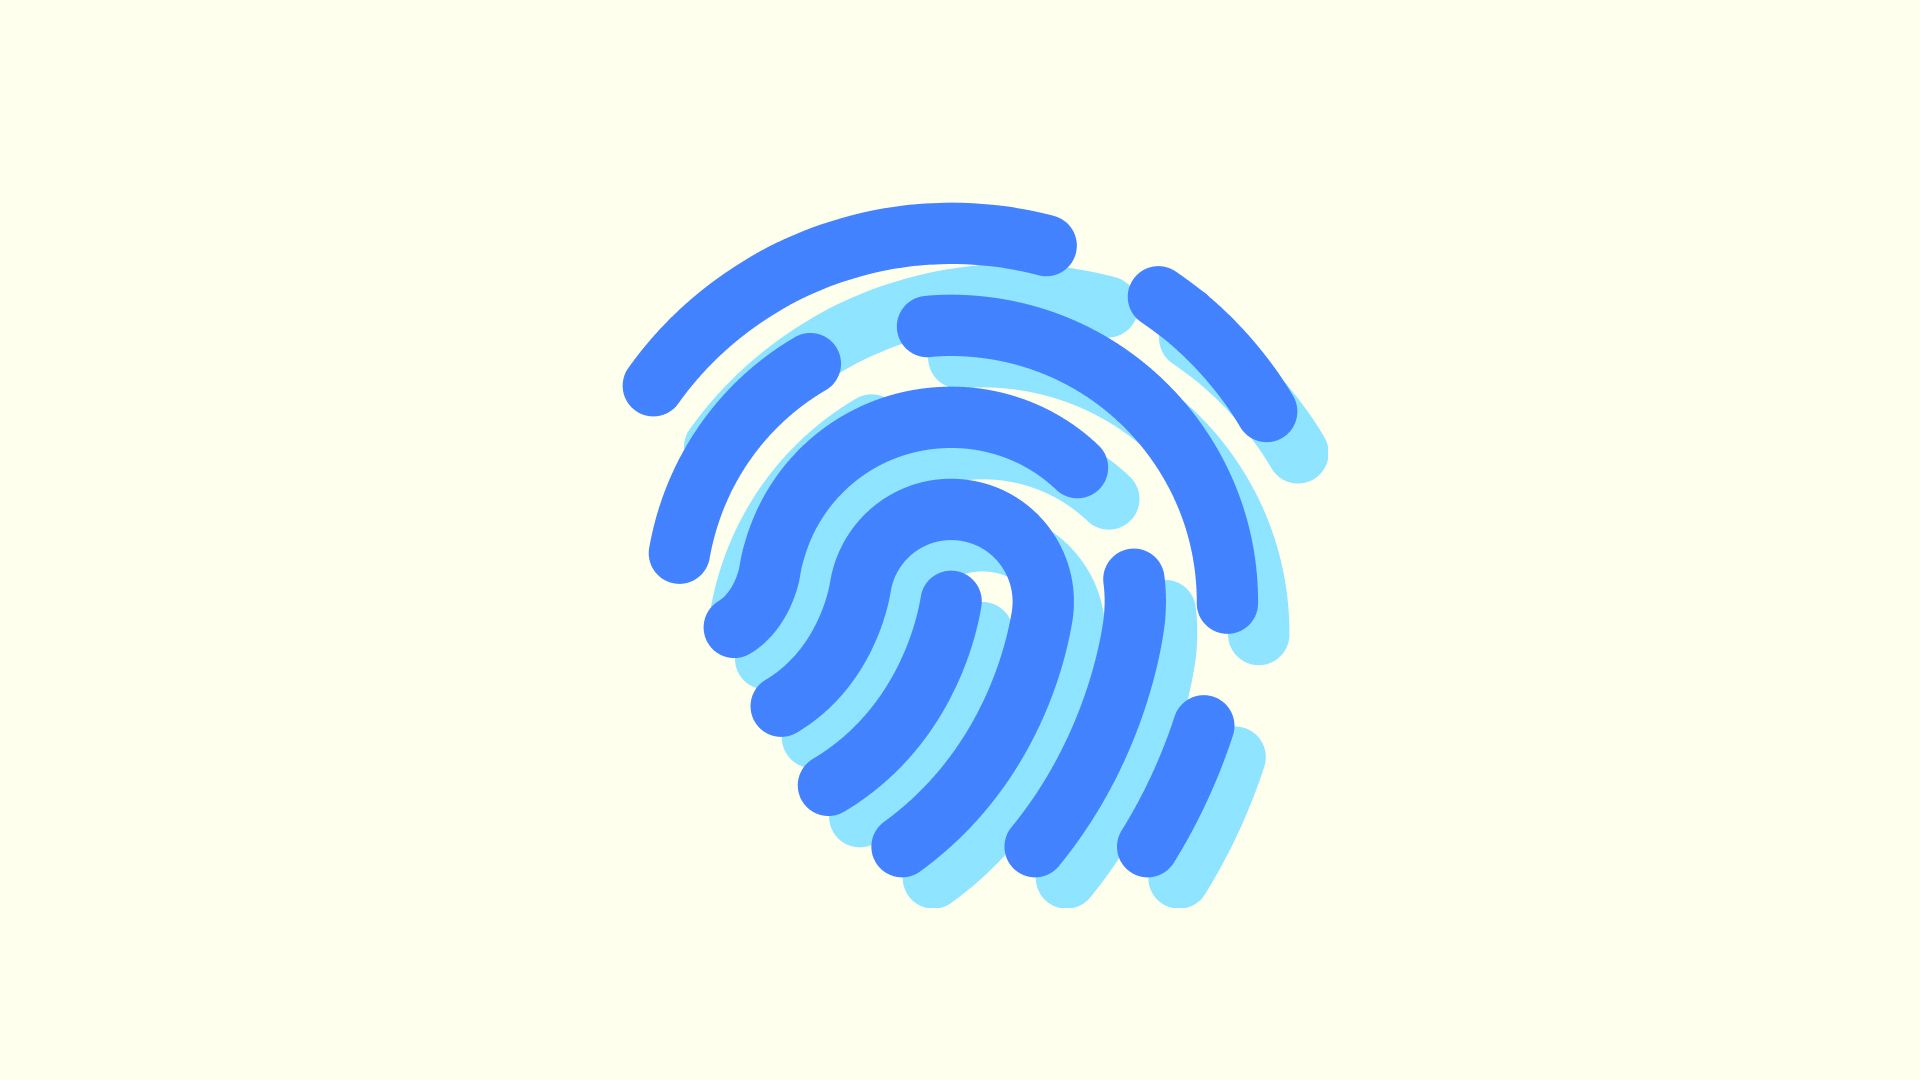 Fingerprint Sensors in All the Things